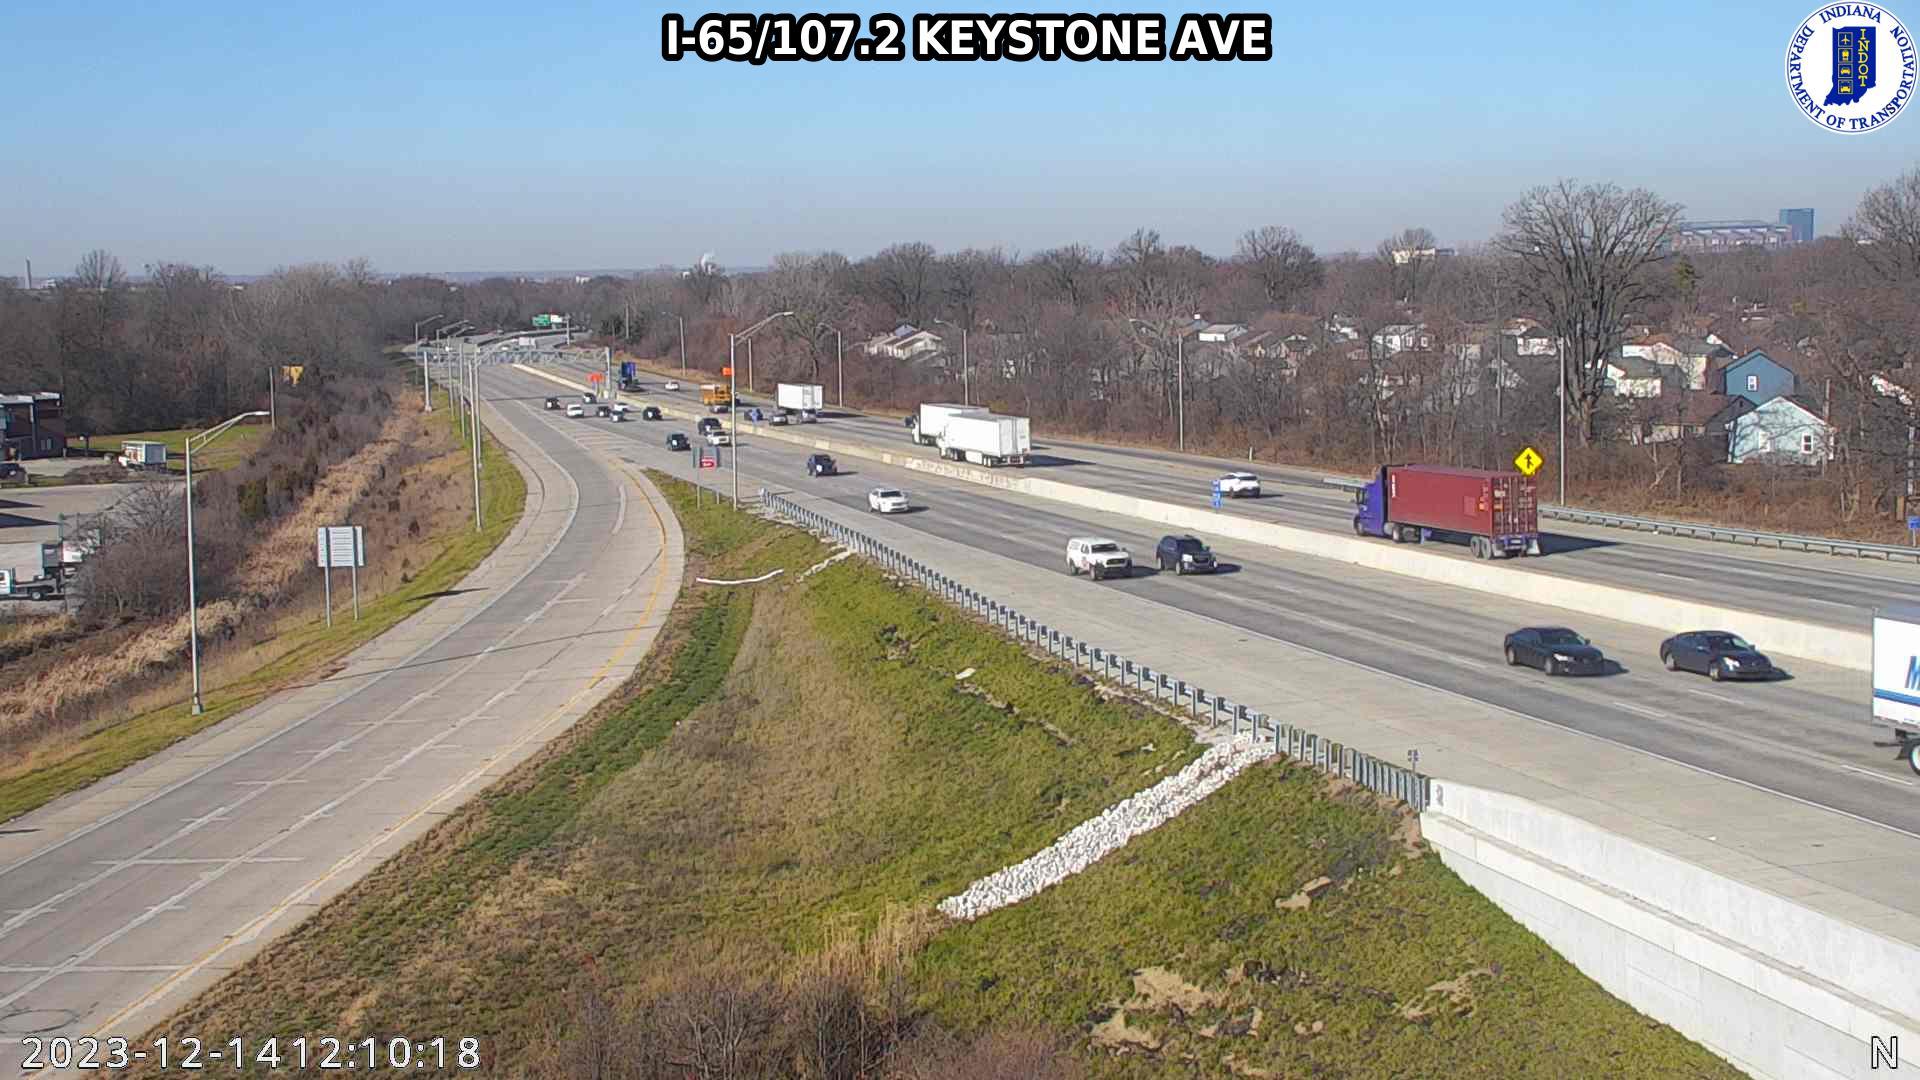 Traffic Cam Indianapolis: I-65: I-65/107.2 KEYSTONE AVE